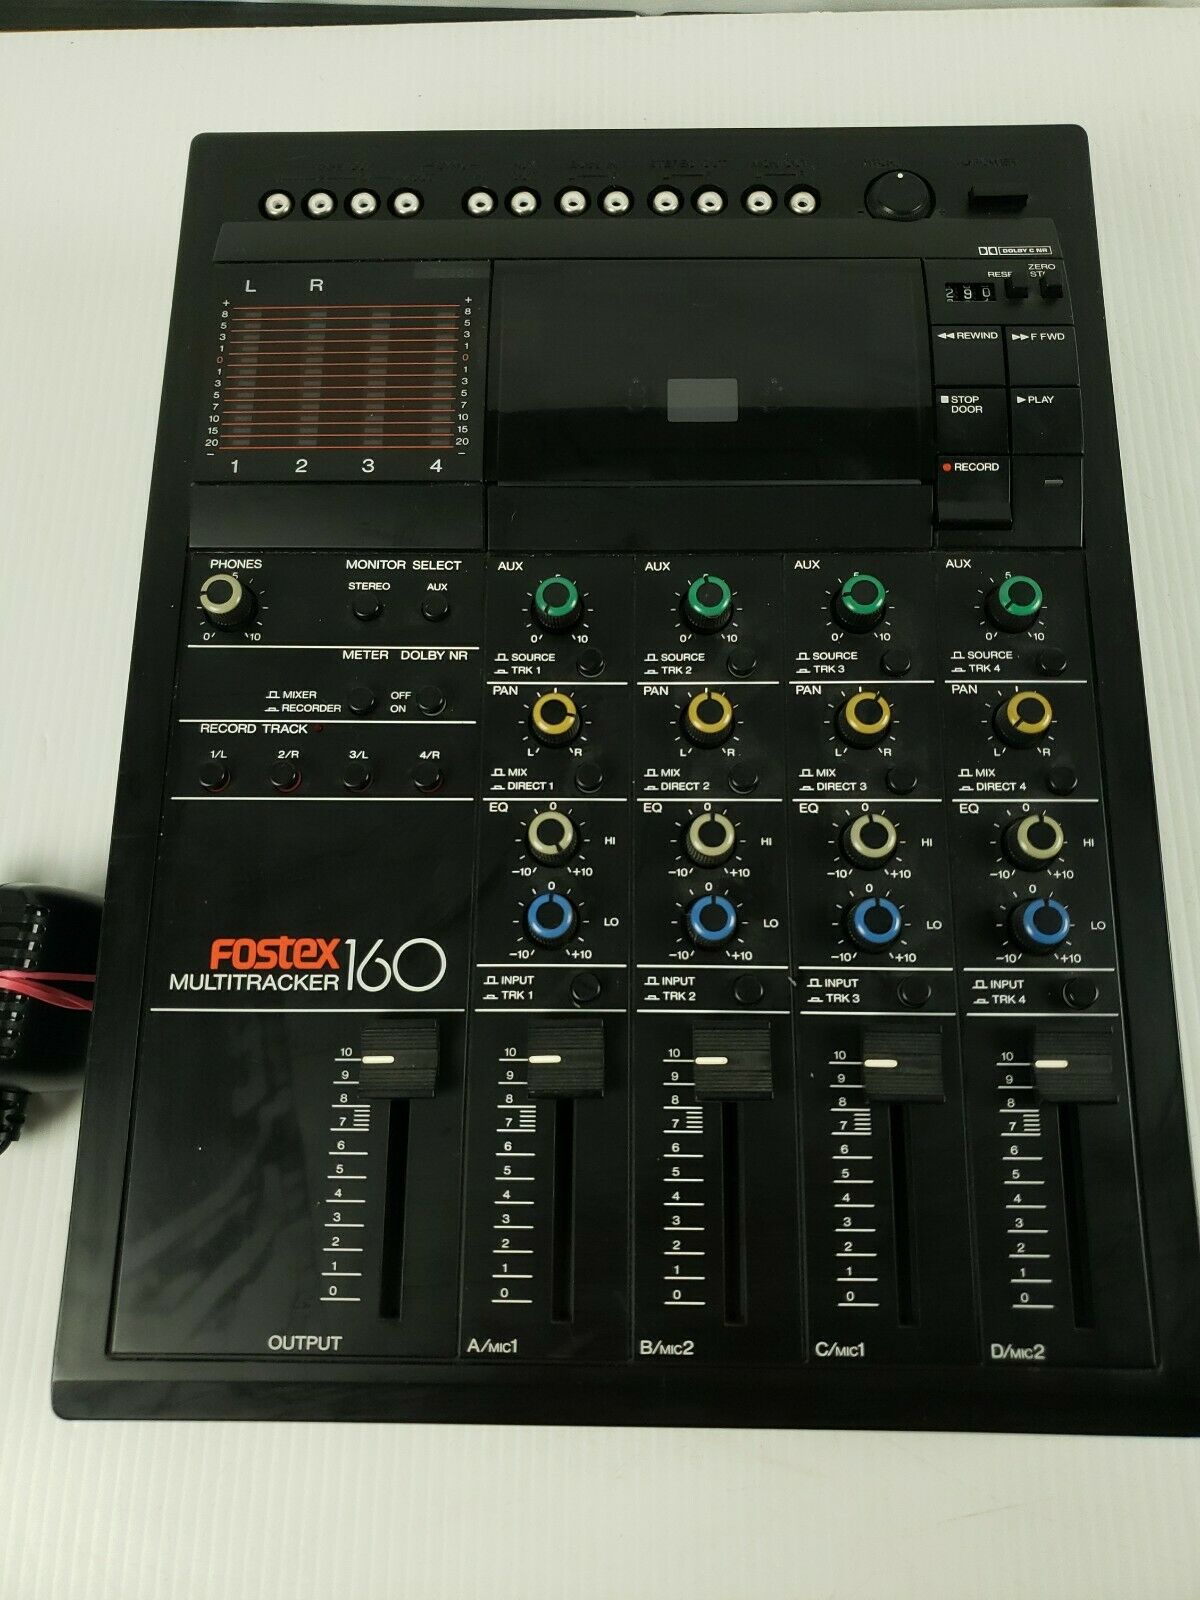 4 Tracks recorder/mixer